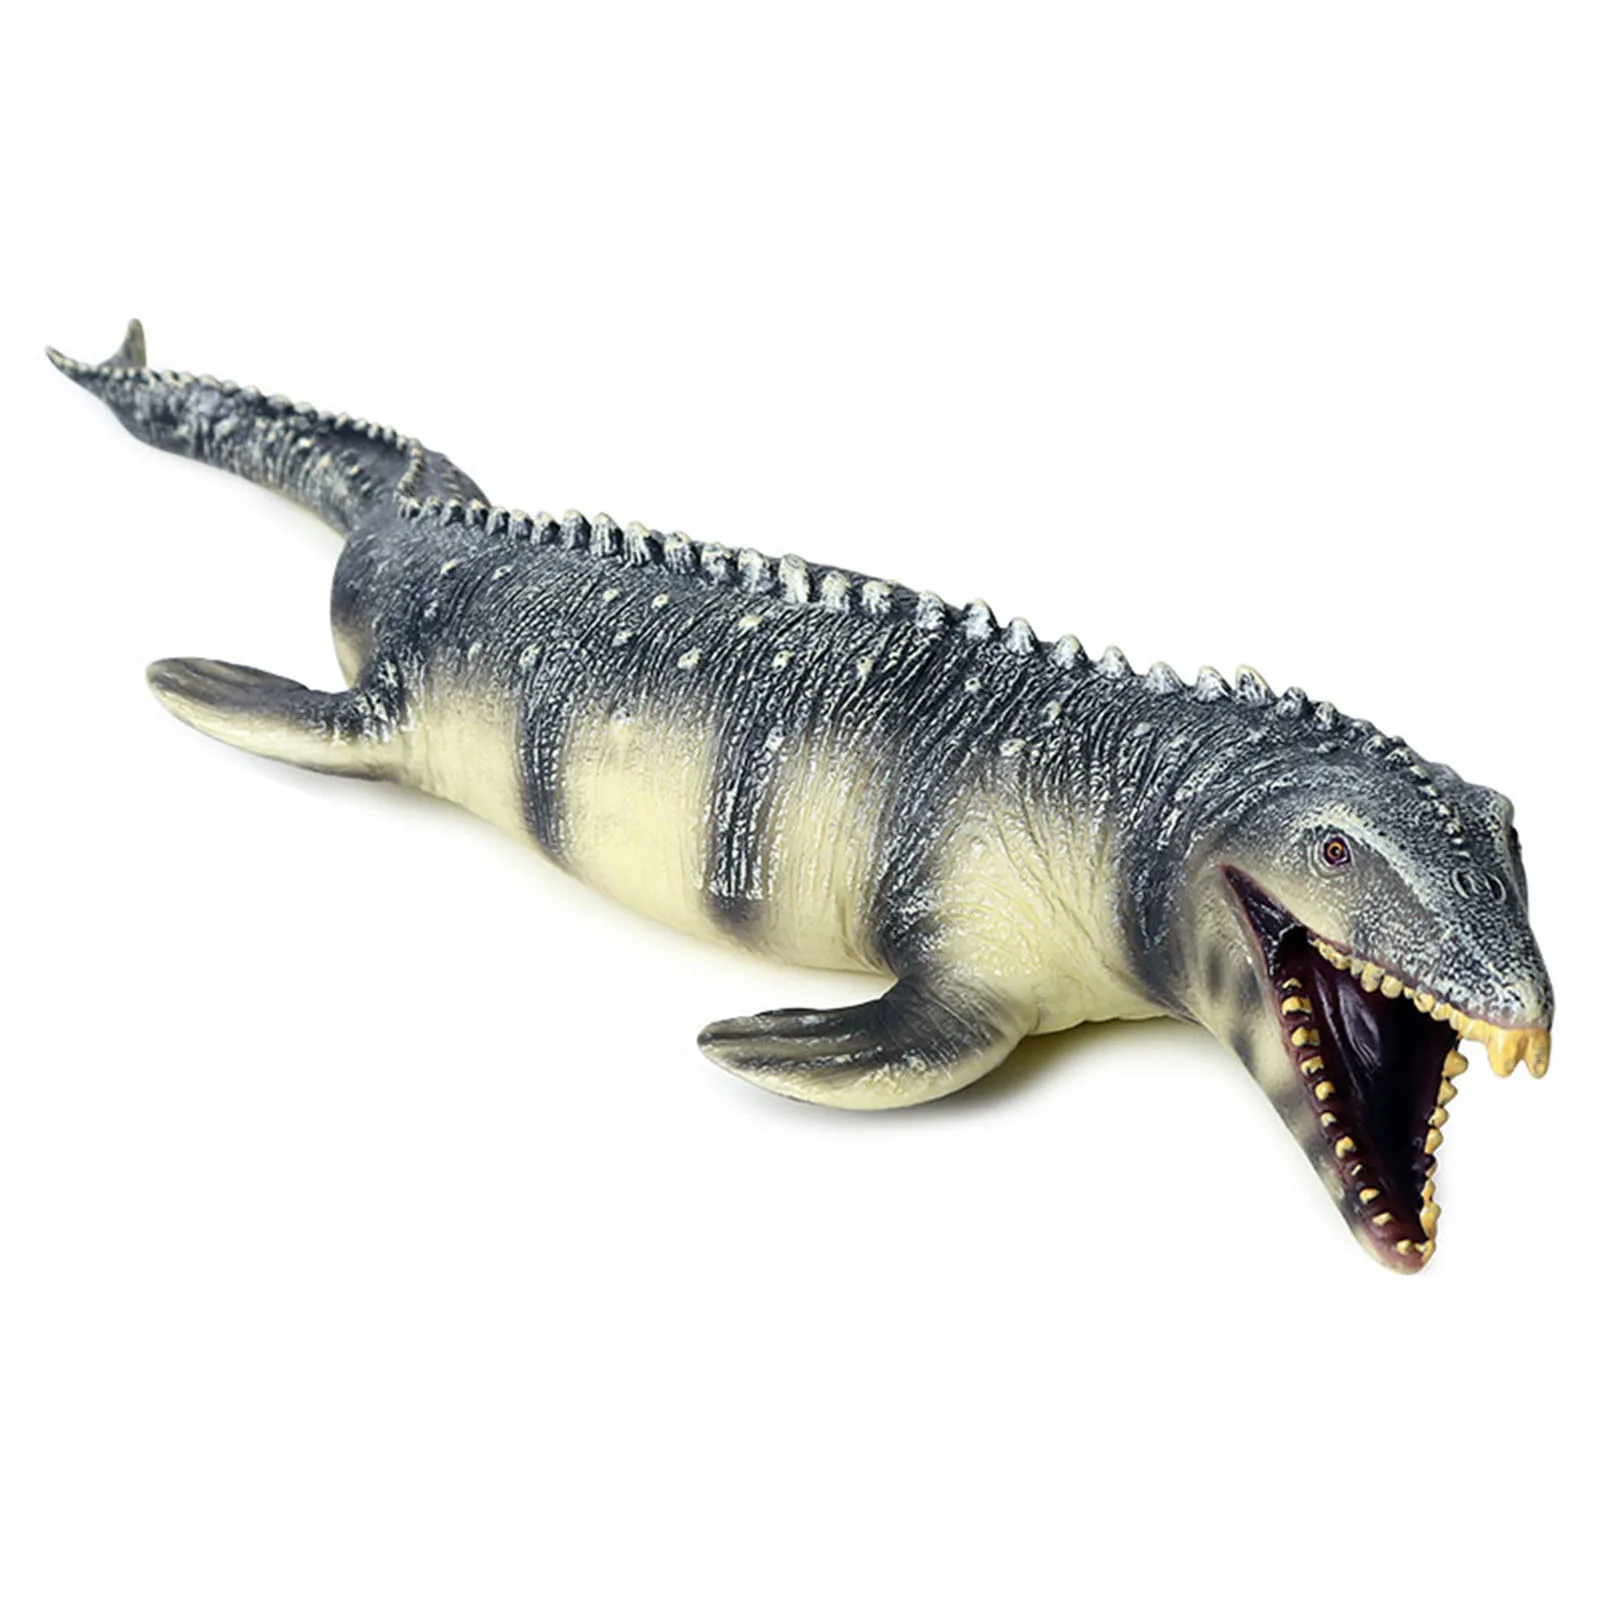 

Реалистичная игрушка Mosasaurus, образовательная модель динозавра, идеальные игрушки динозавра для коллекционеров, украшение вечерние, детская игрушка